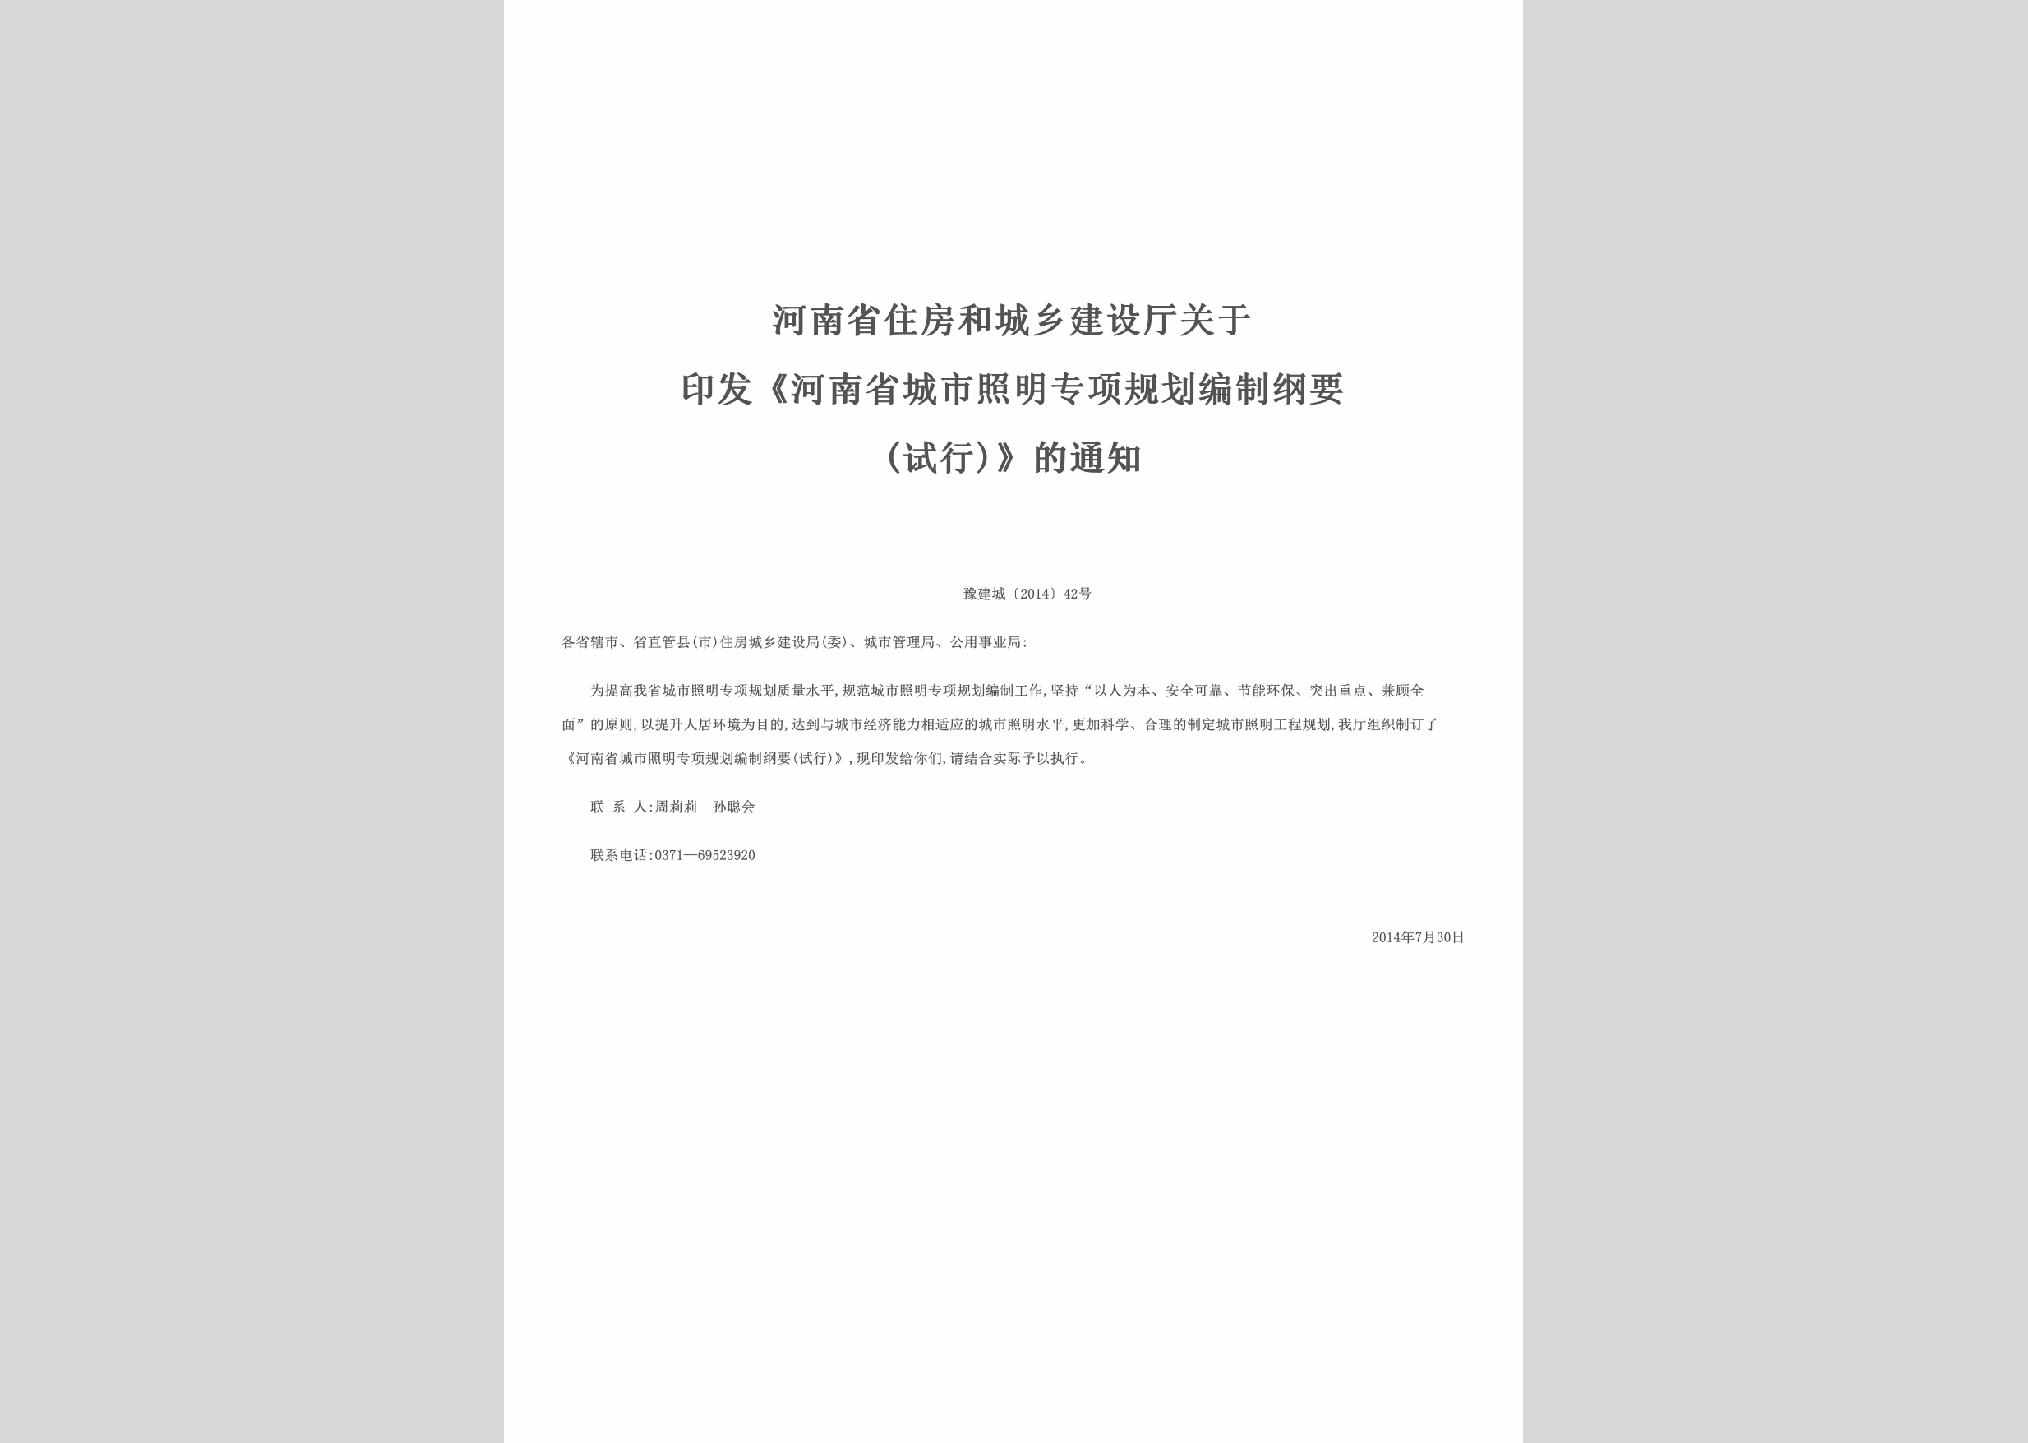 豫建城[2014]42号：关于印发《河南省城市照明专项规划编制纲要(试行)》的通知